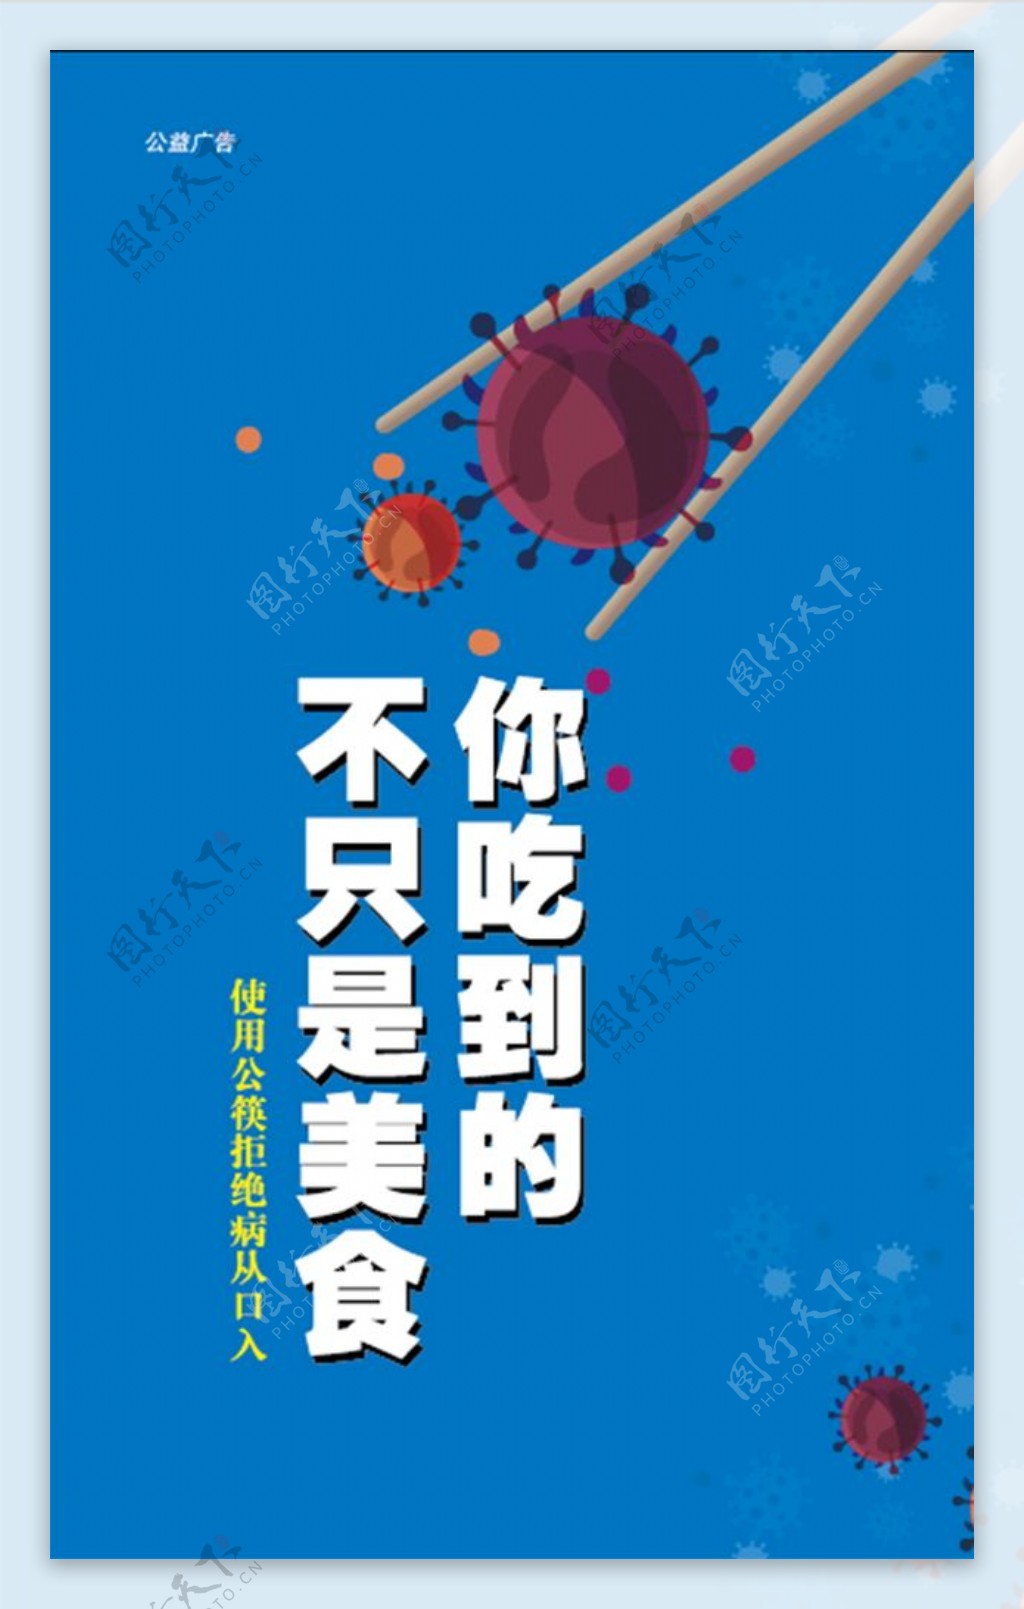 使用公筷公益广告